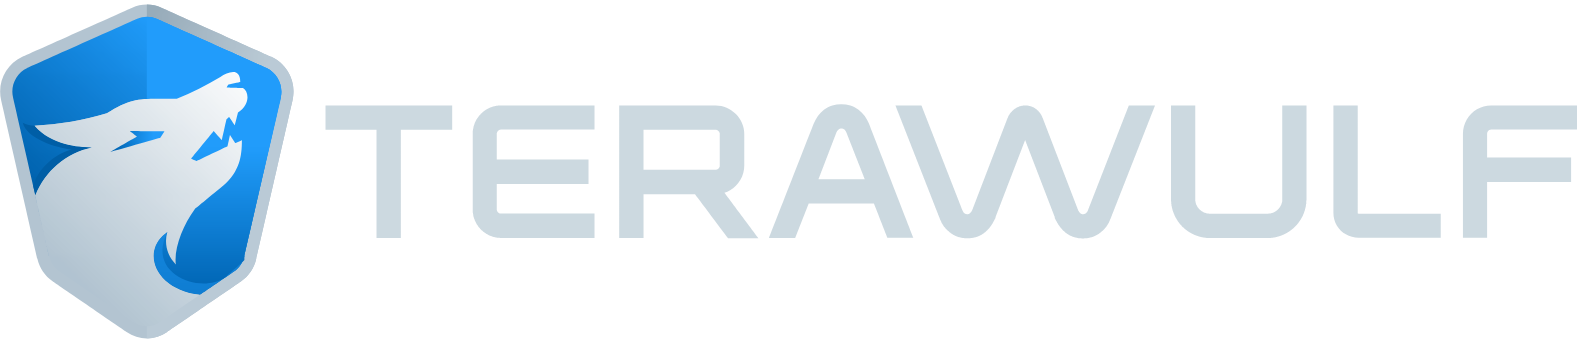 TeraWulf logo large (transparent PNG)